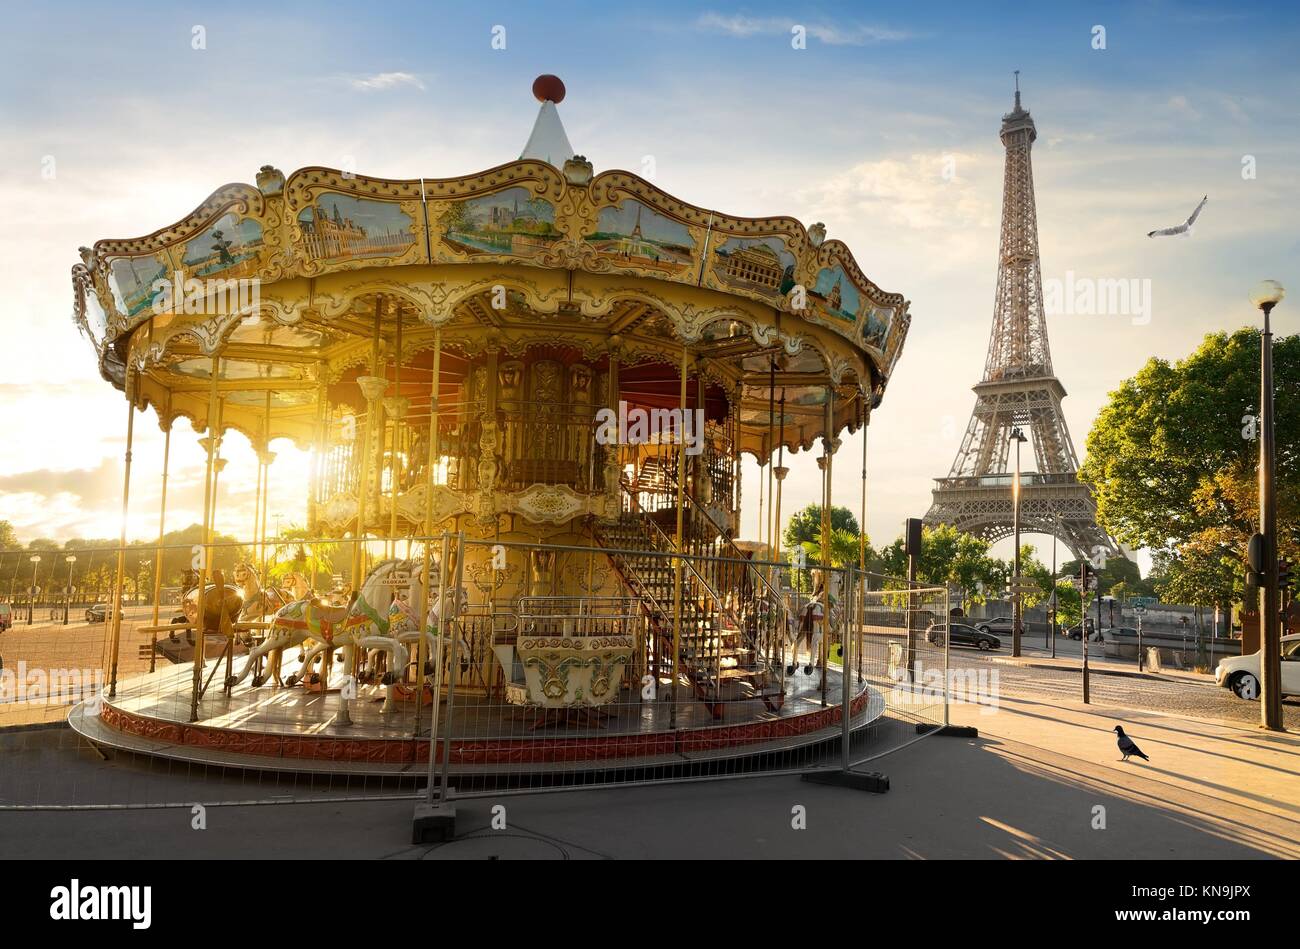 Karussell im Park in der Nähe des Eiffelturm in Paris. Stockfoto